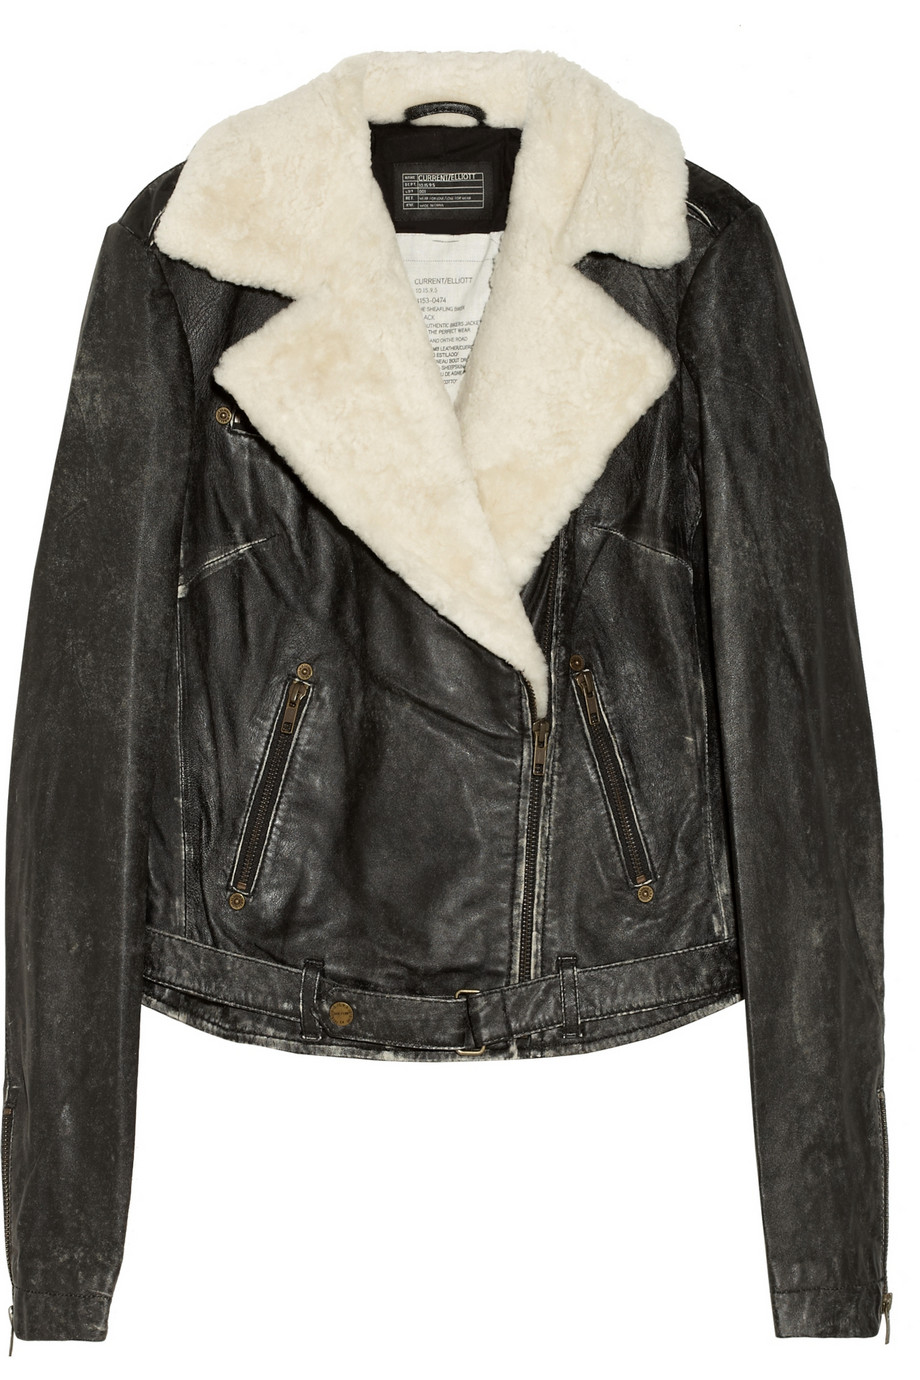 Sheepskin Leather Jacket Womens - Jacket